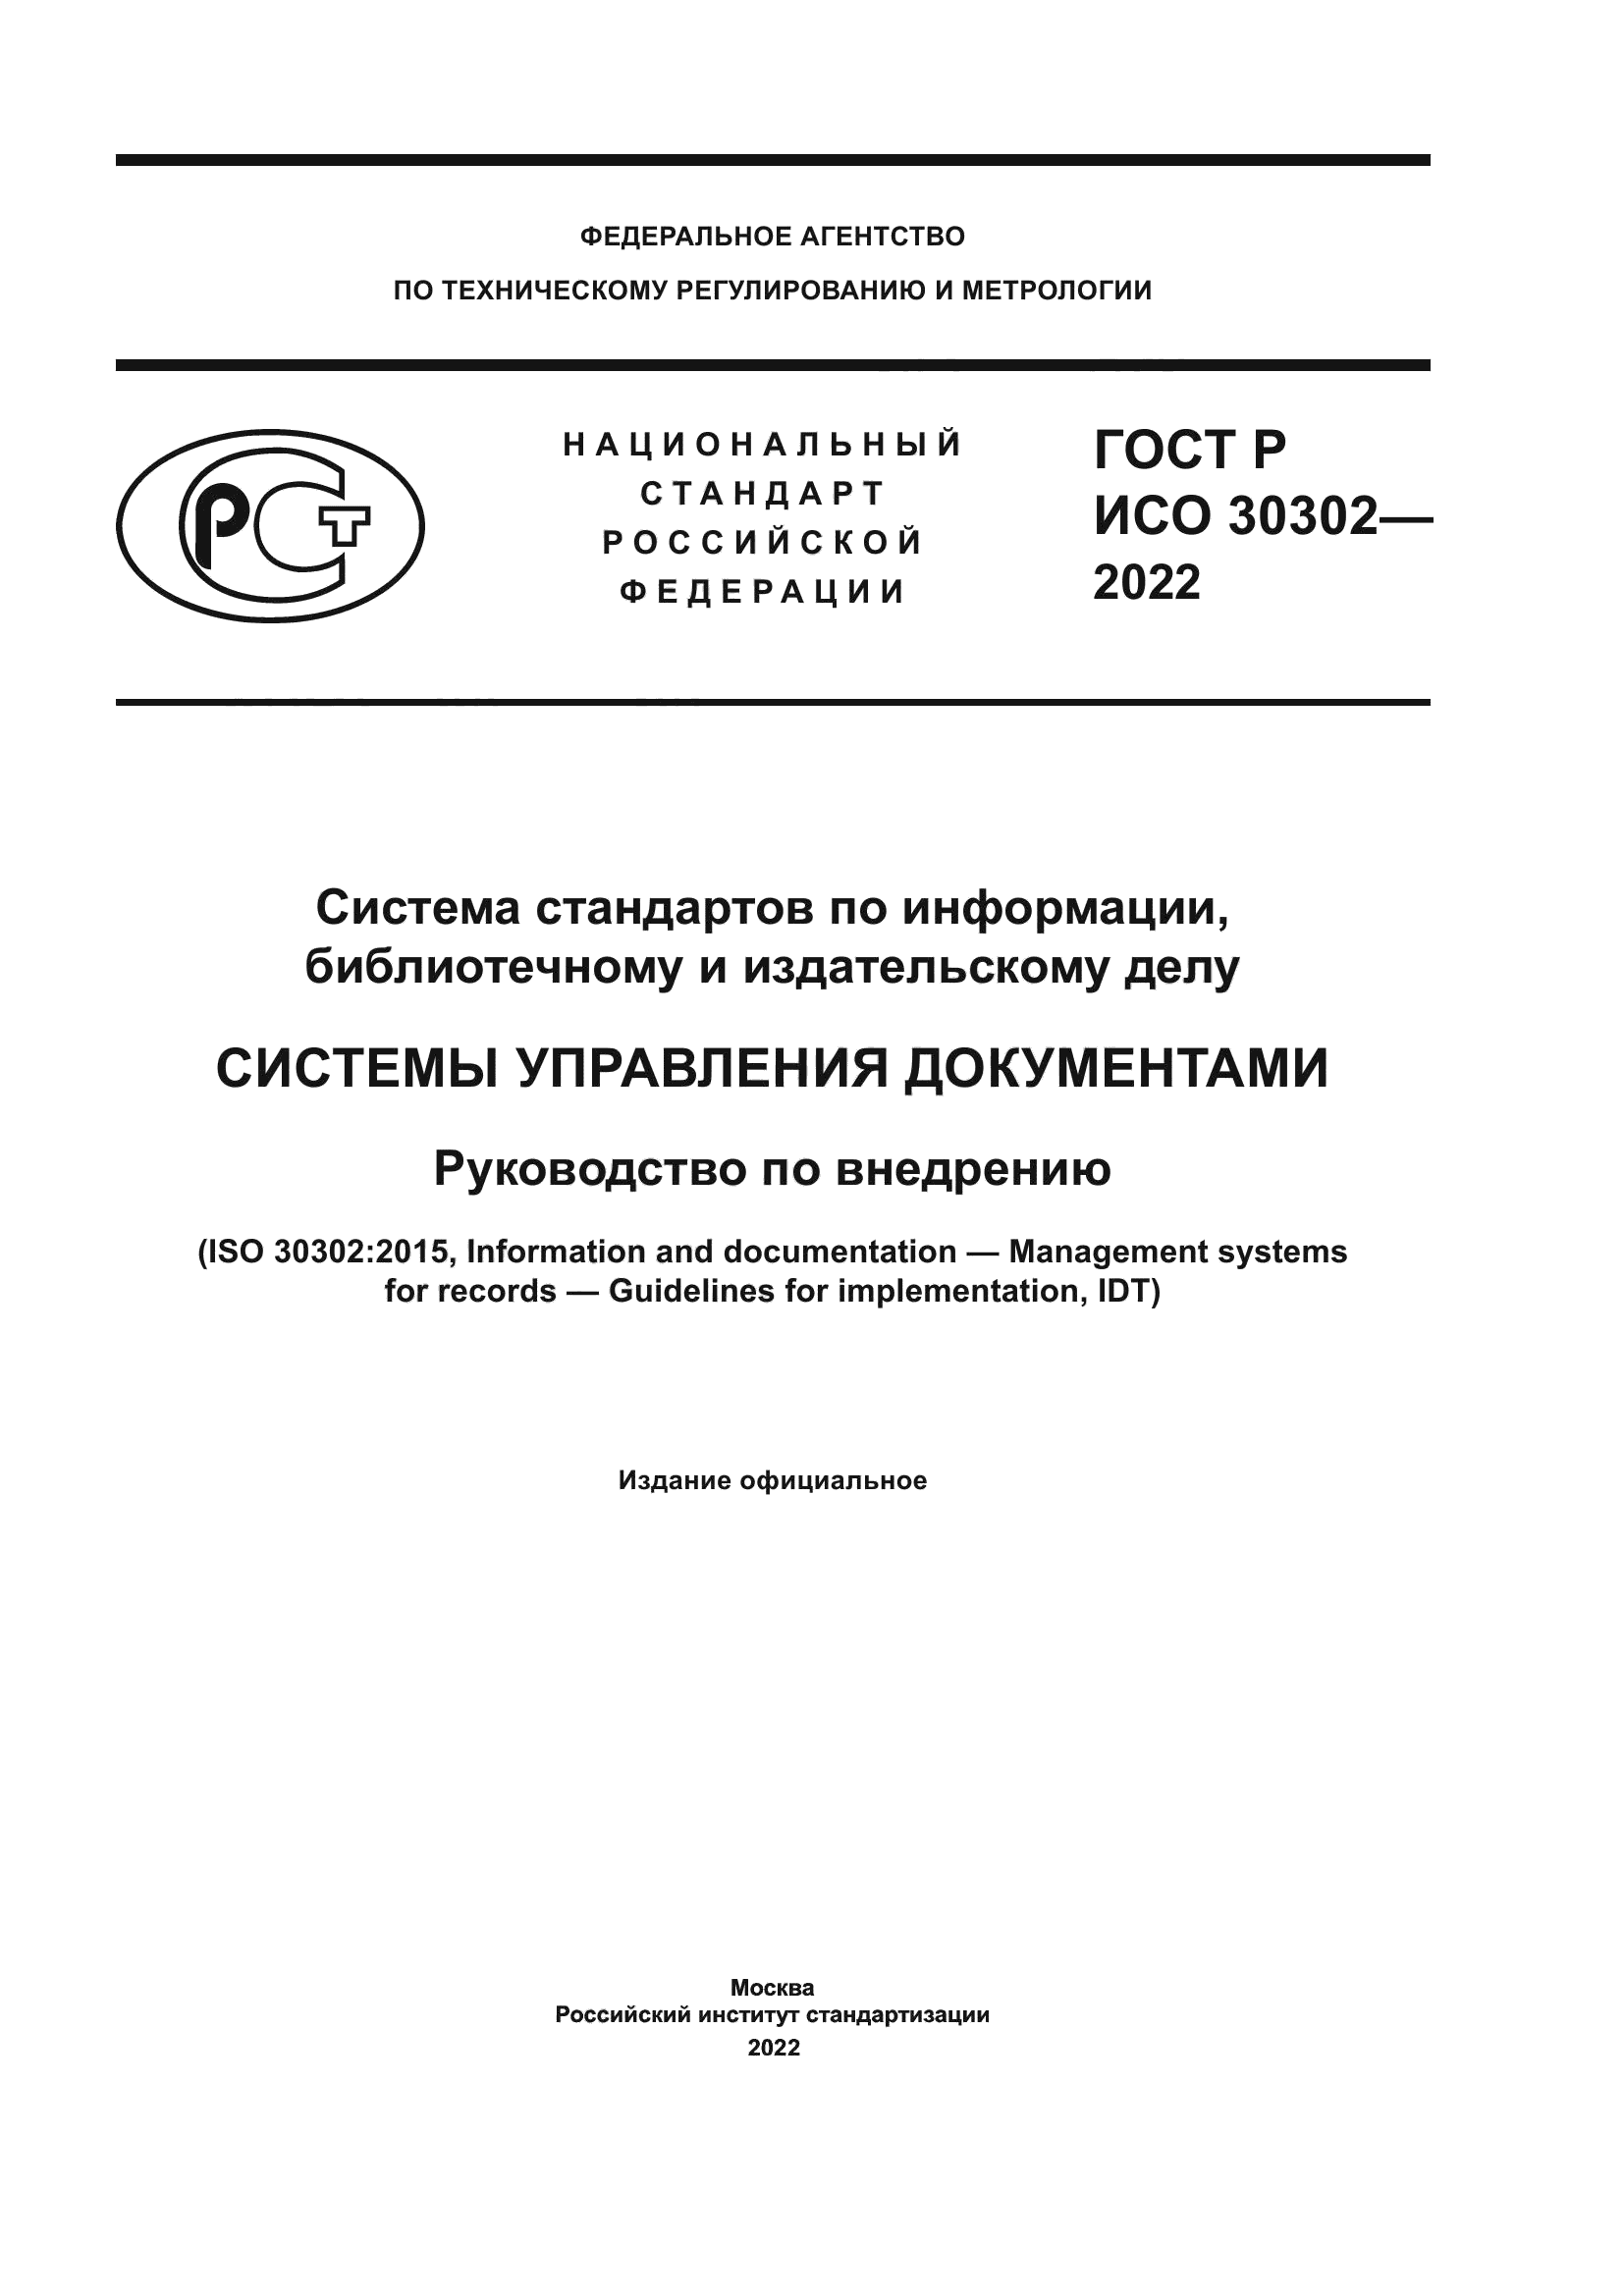 ГОСТ Р ИСО 30302-2022